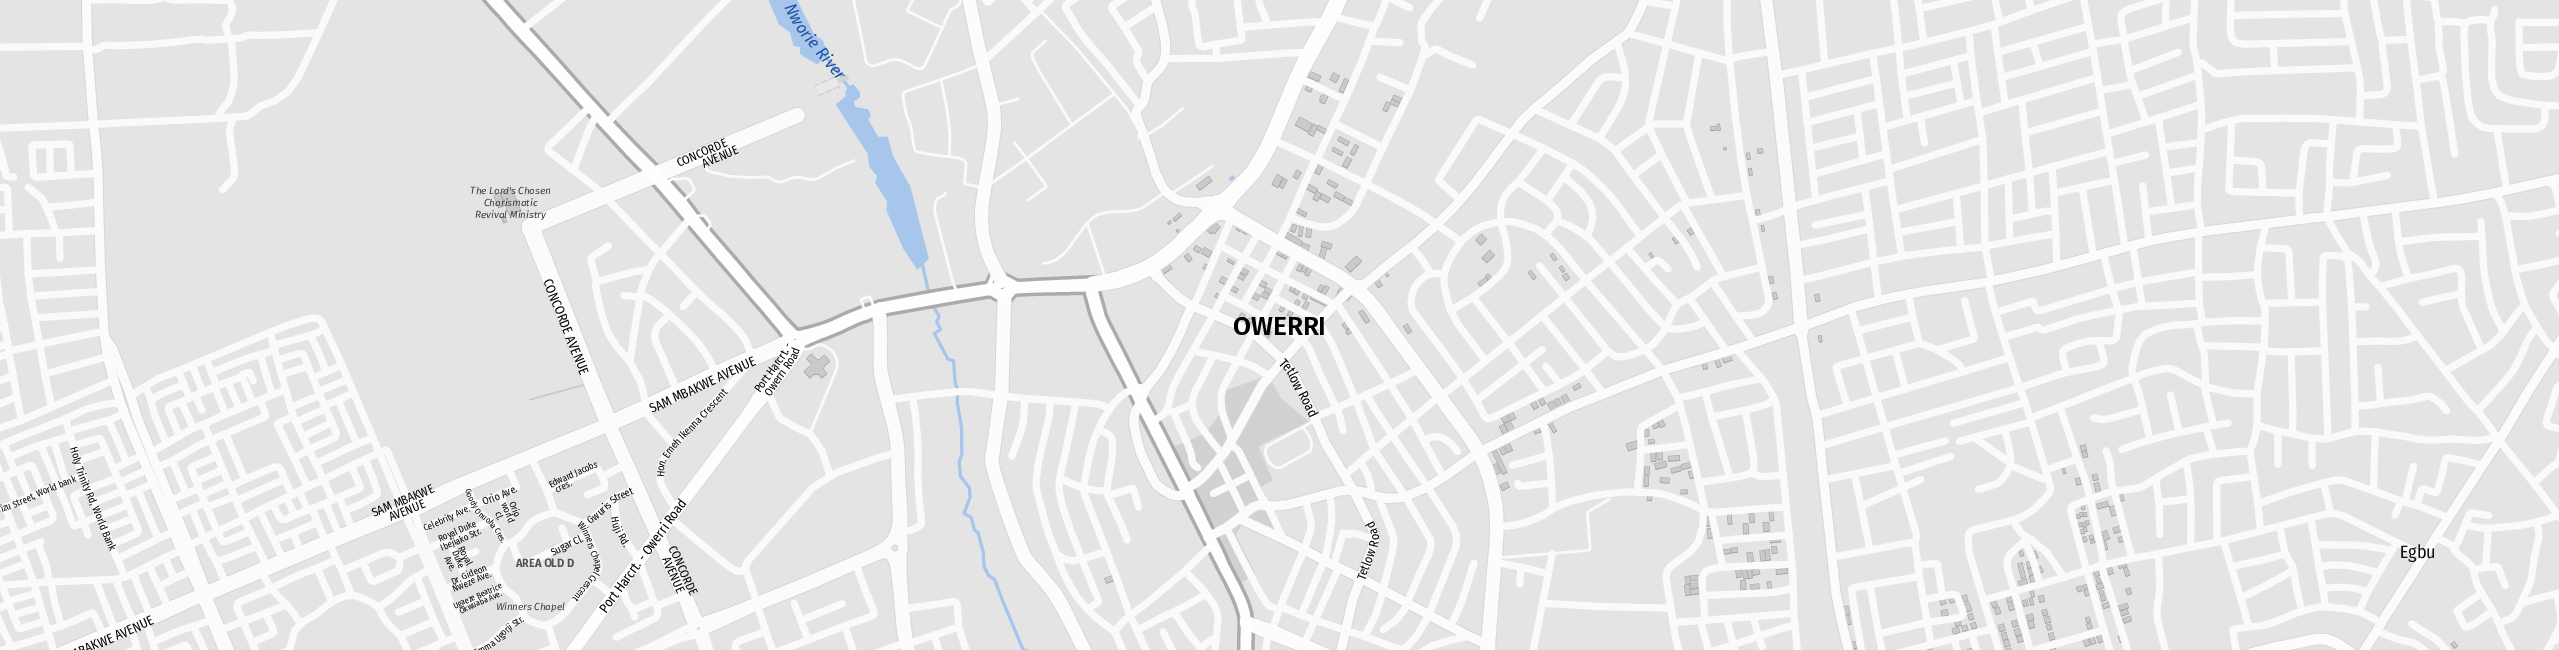 Stadtplan Owerri zum Downloaden.